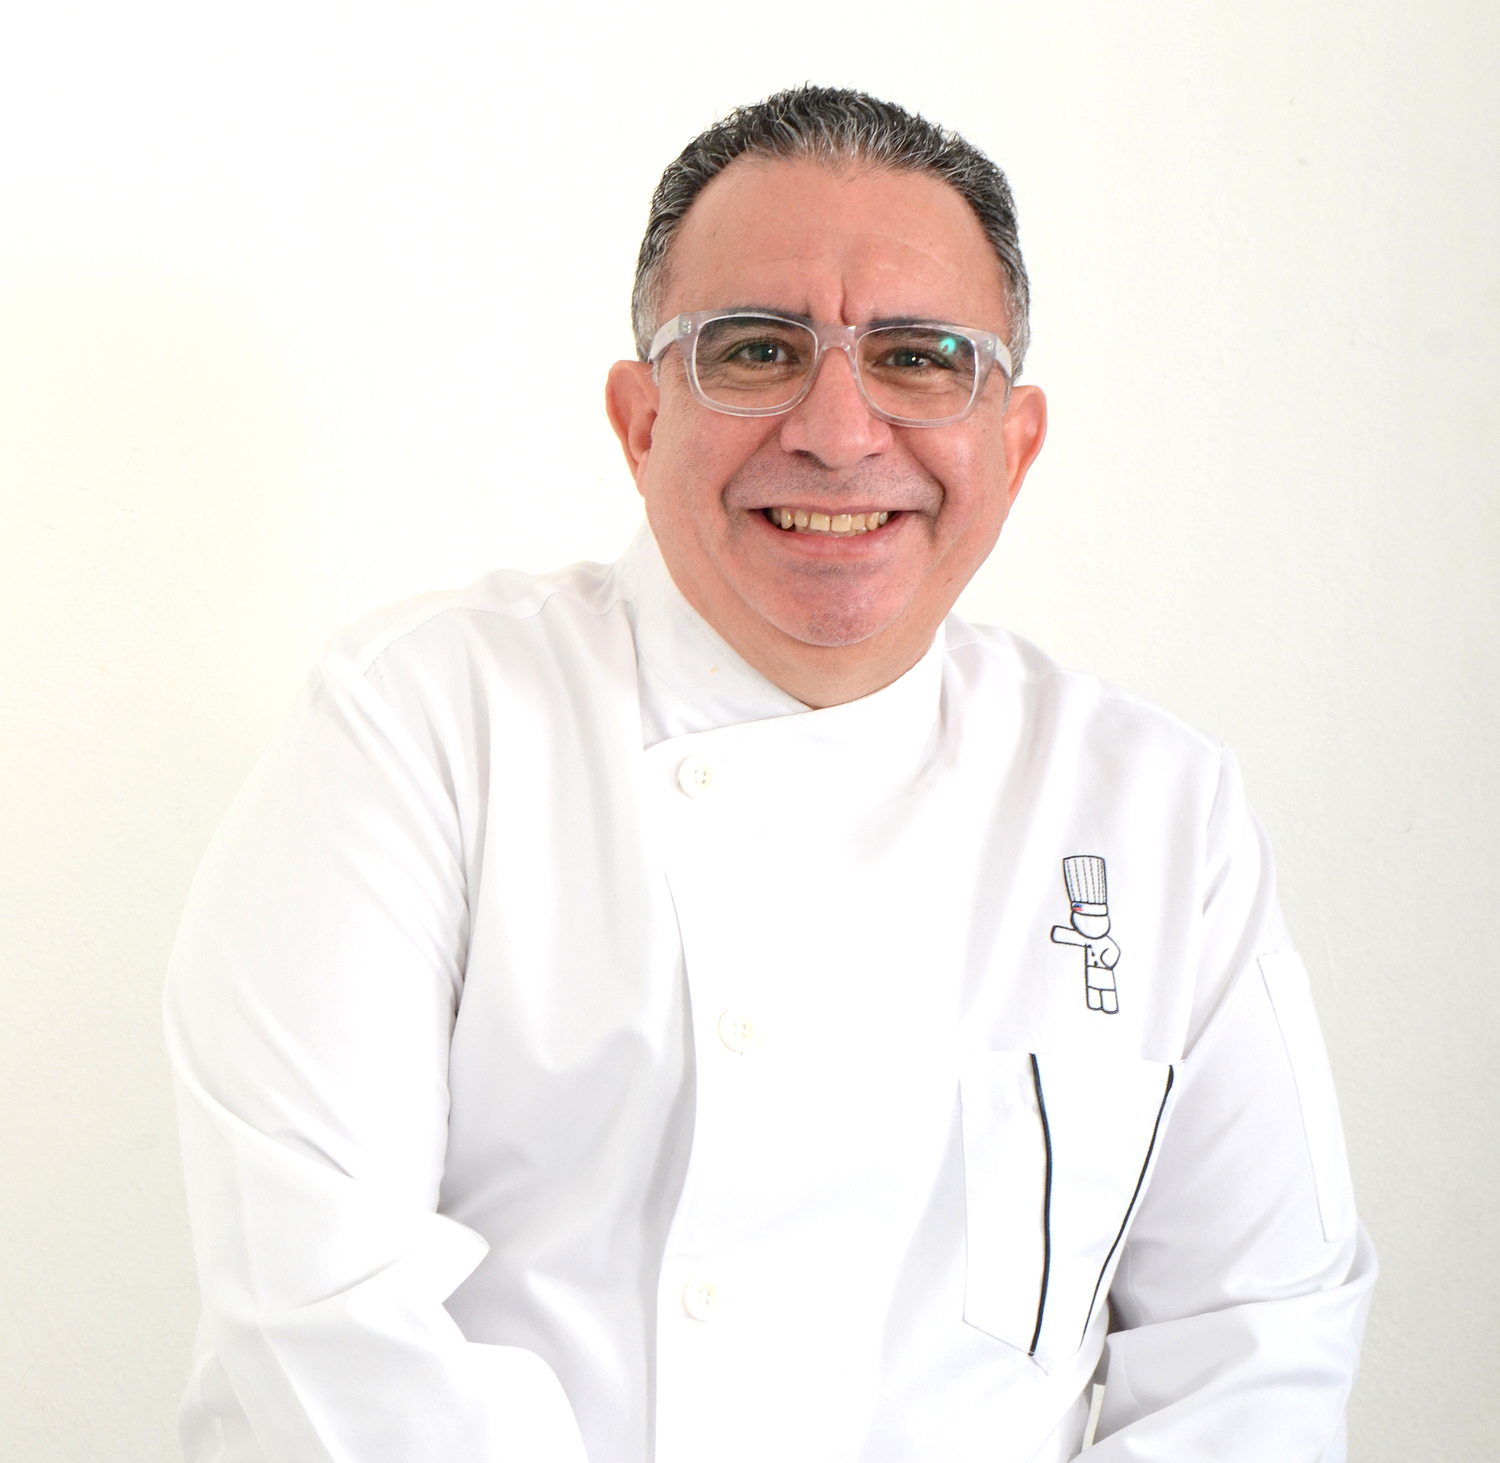 El chef Juancho Ortiz, invitado a Cóctel y festejo de Independencia Dominicana en Viena y Budapest